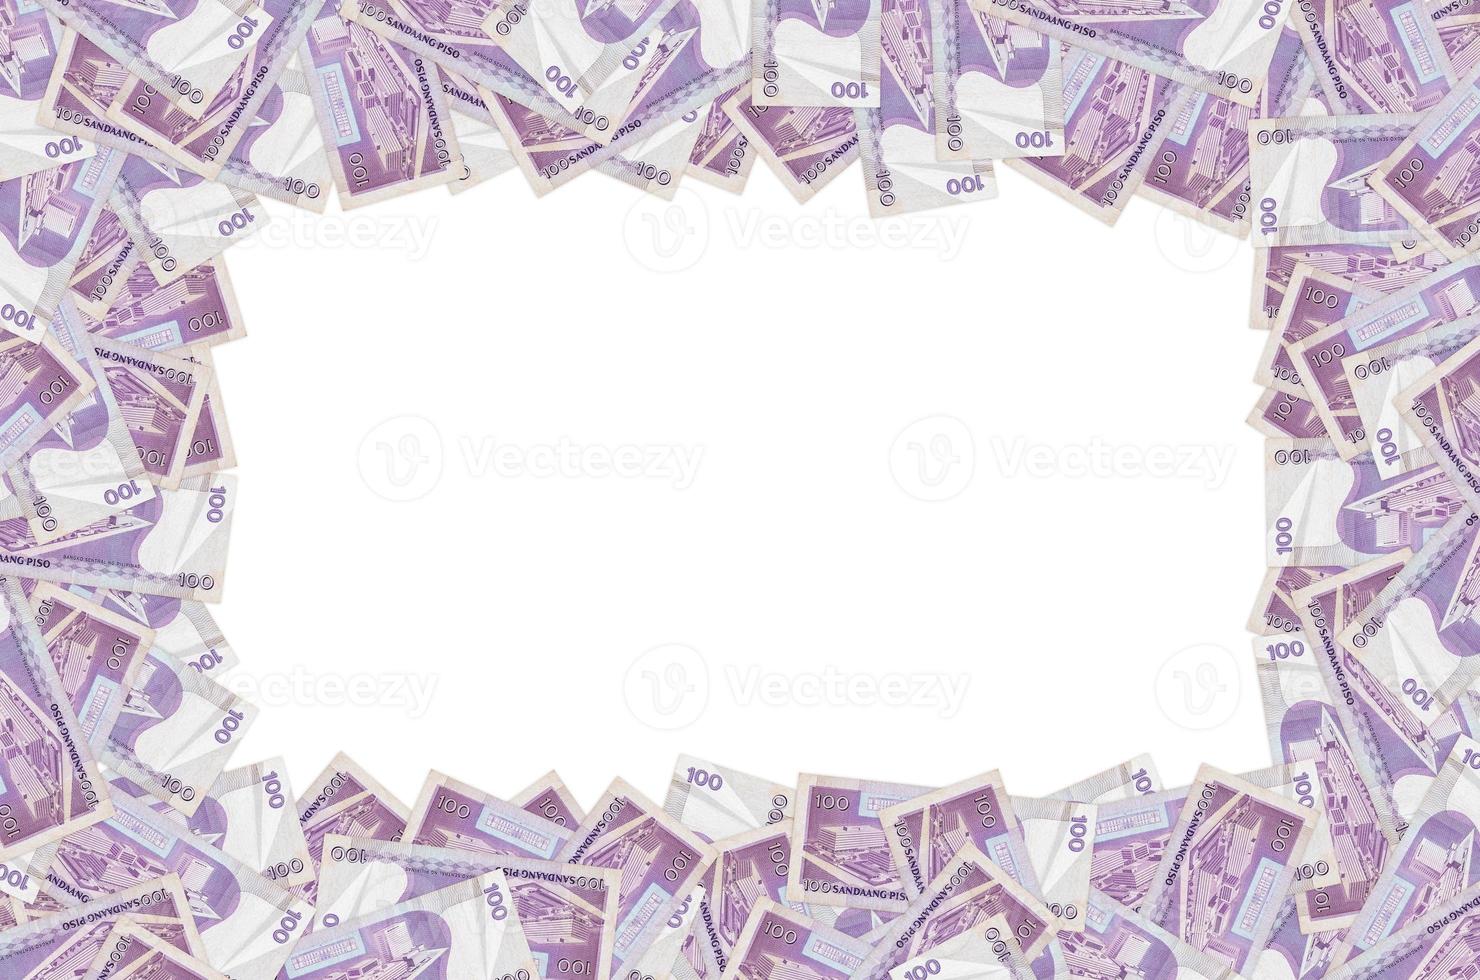 banco central de filipinas en 100 piso filipinas billete de dinero patrón de cierre foto